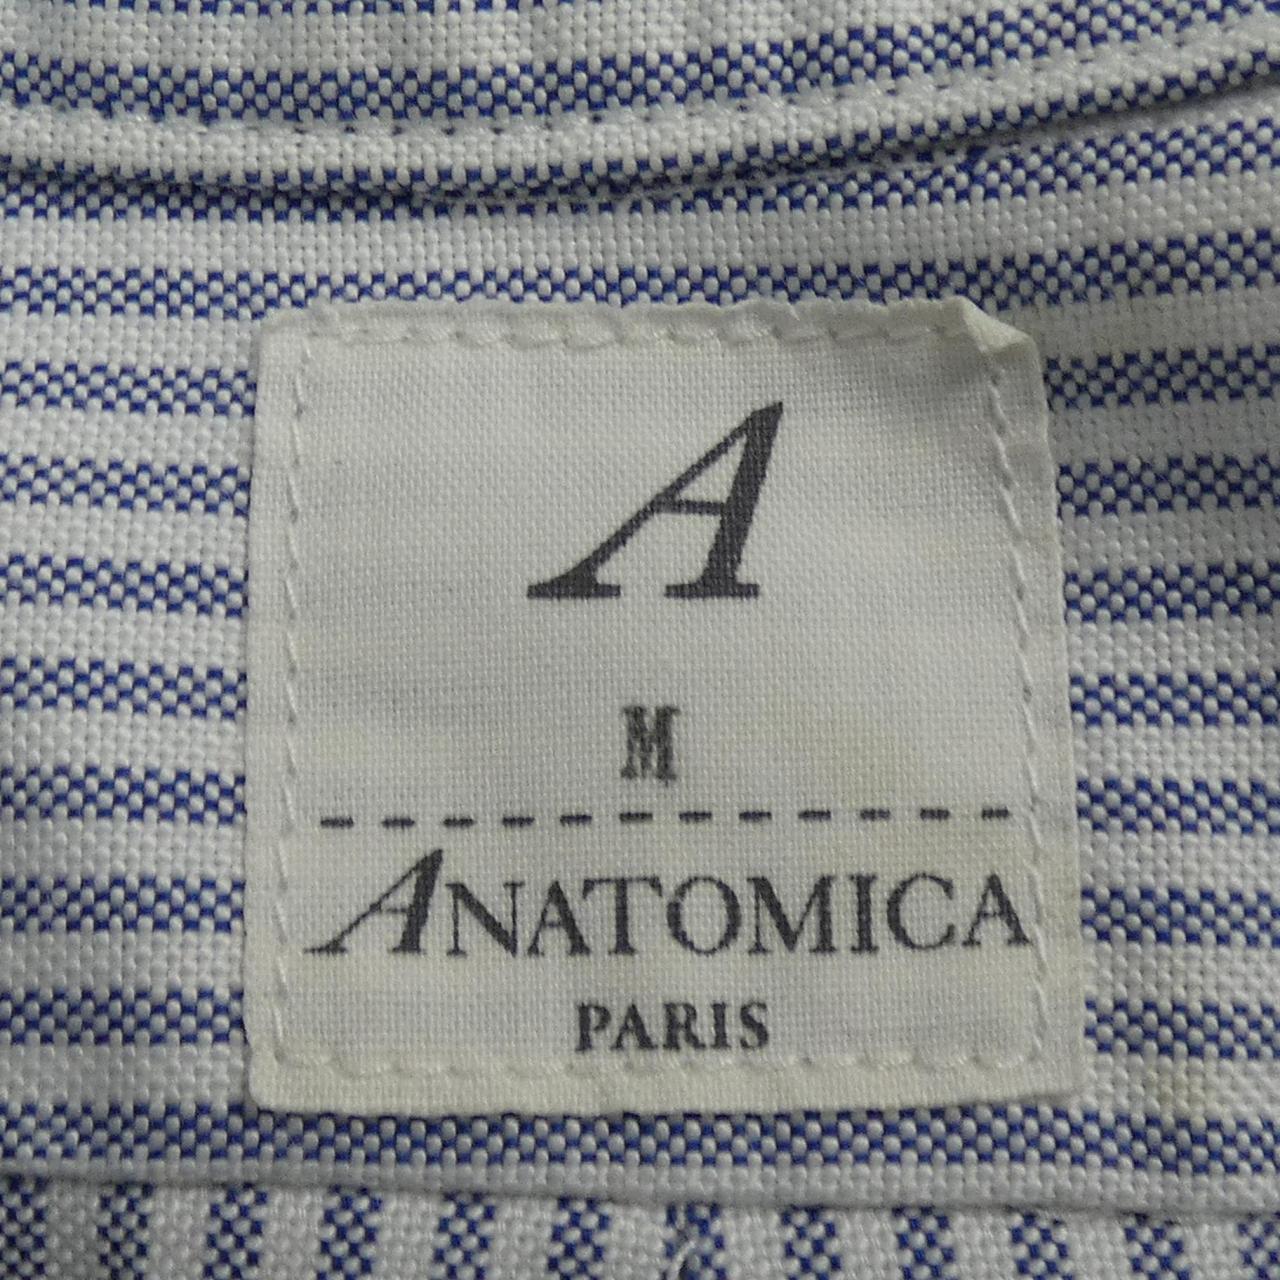 アナトミカ ANATOMICA シャツ